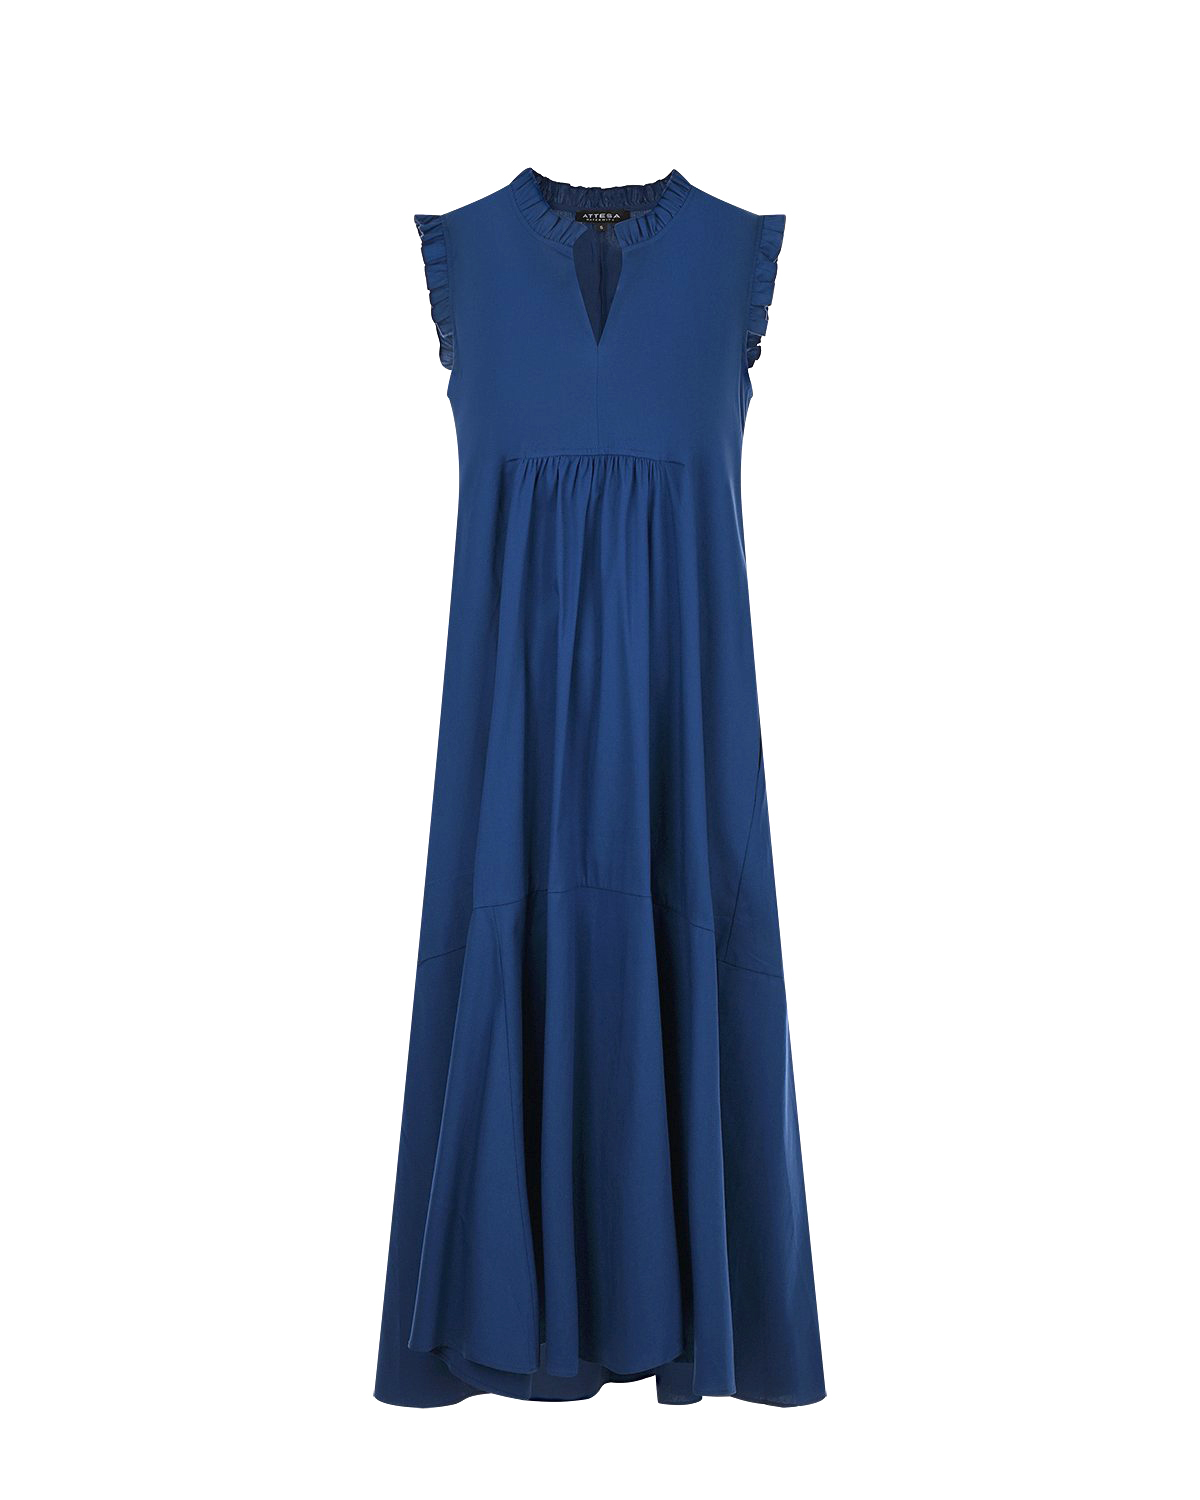 Синее платье с рюшами Attesa, размер 38, цвет синий - фото 1